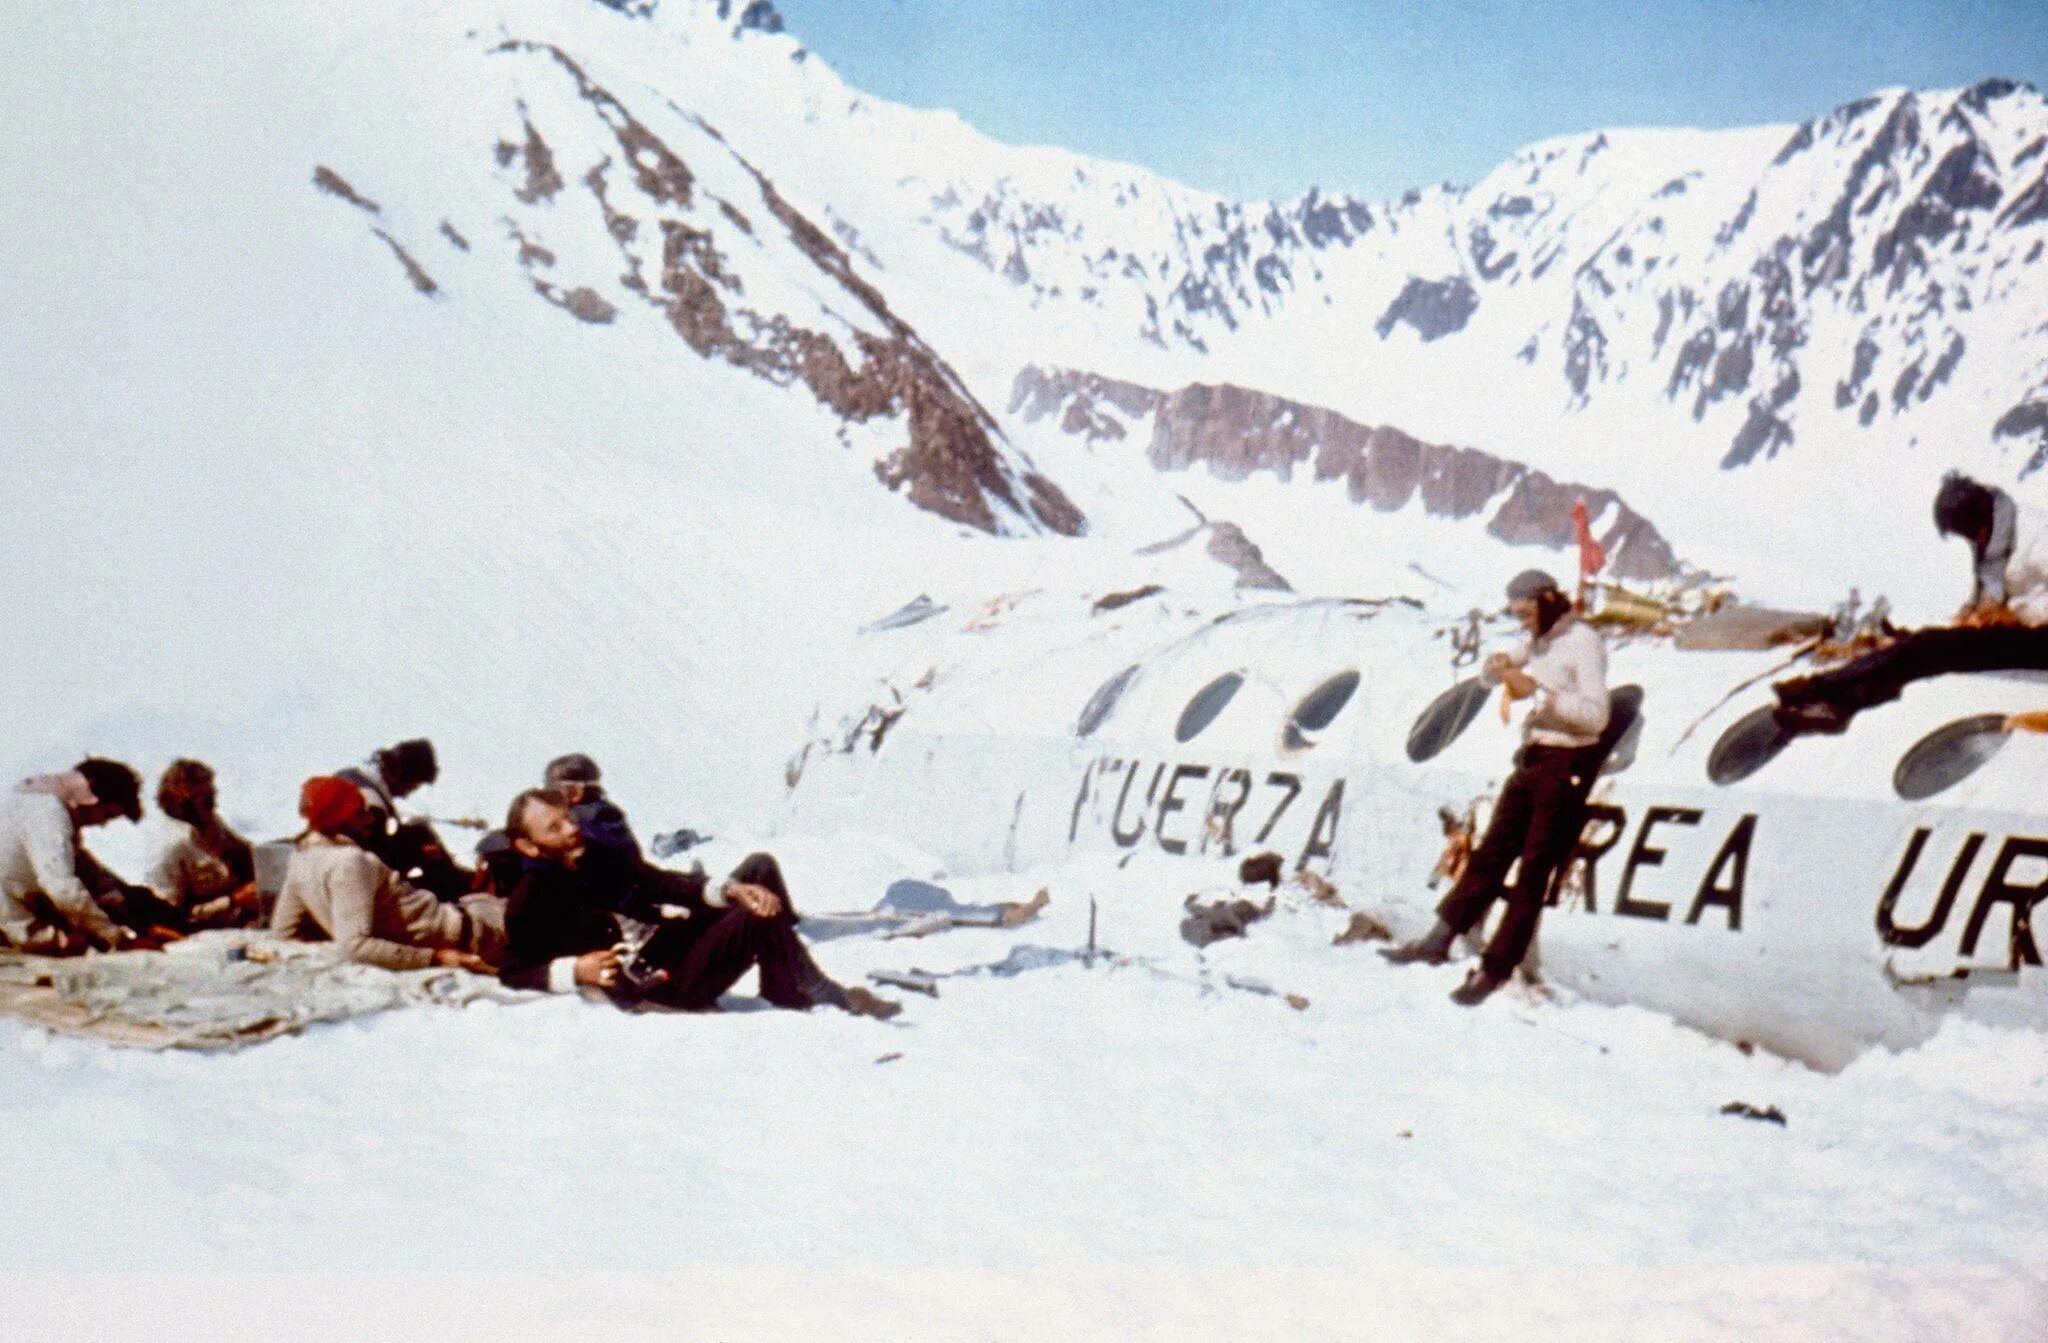 Про авиакатастрофу в андах. Самолет разбившийся в Андах в 1972. 13 Октября 1972 авиакатастрофа в Андах.